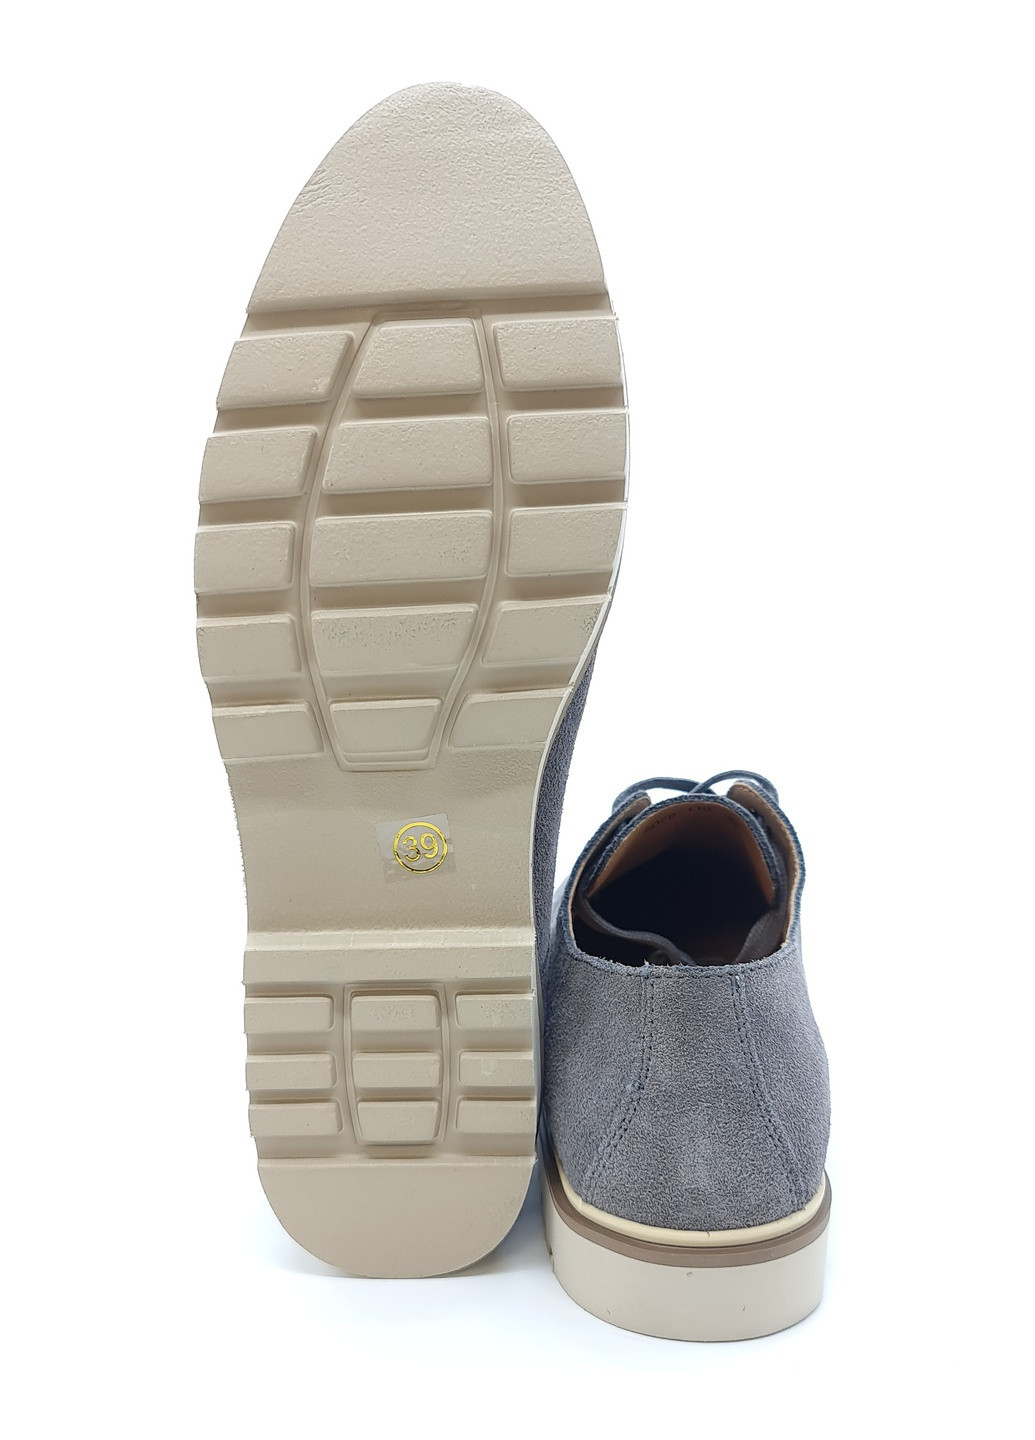 Женские туфли серые замшевые L-10-4 24,5 см (р) Lonza